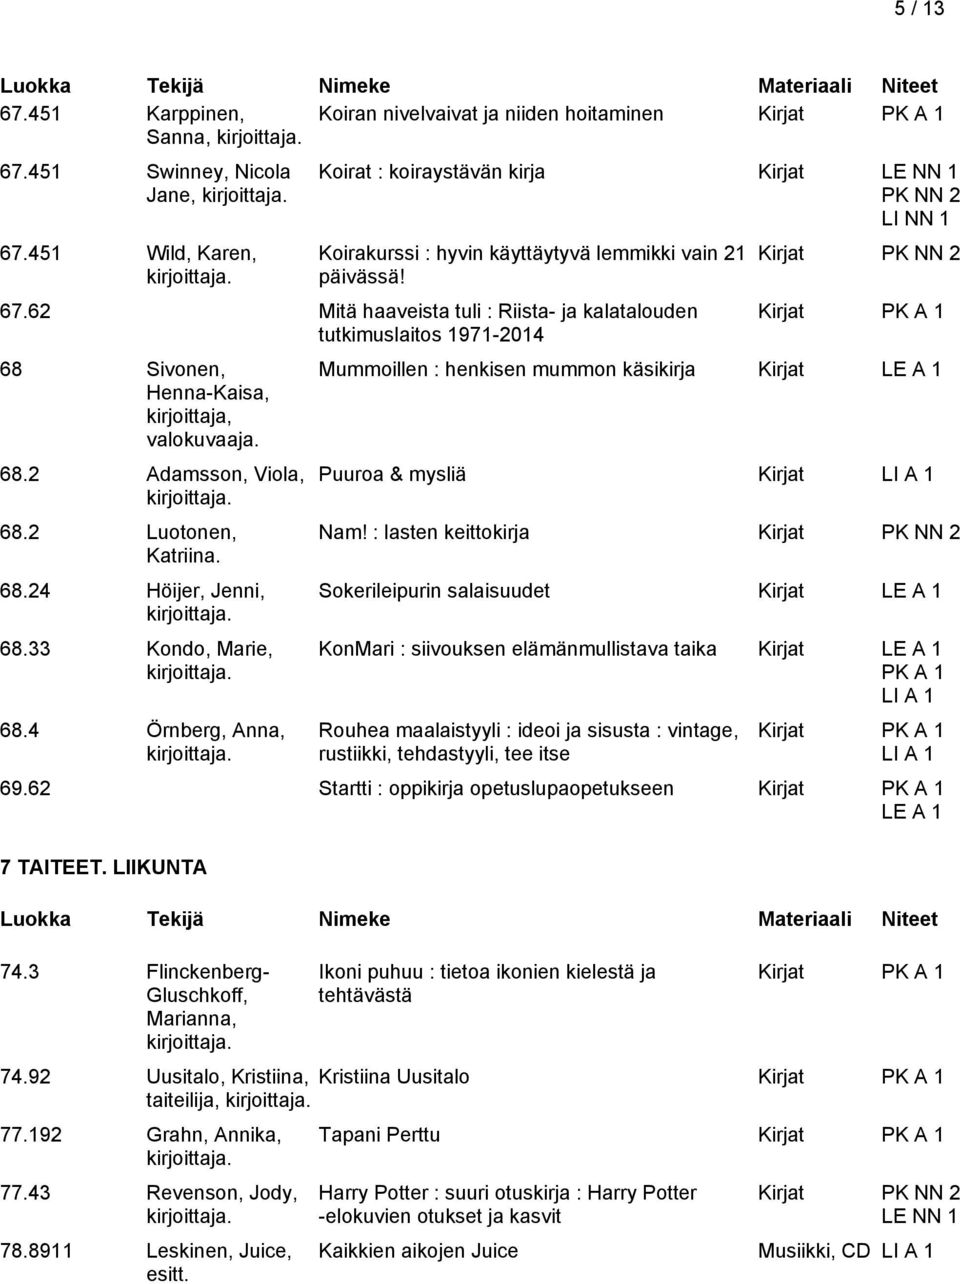 62 Mitä haaveista tuli : Riista- ja kalatalouden tutkimuslaitos 1971-2014 68 Sivonen, Henna-Kaisa, valokuvaaja. 68.2 Adamsson, Viola, 68.2 Luotonen, Katriina. 68.24 Höijer, Jenni, 68.